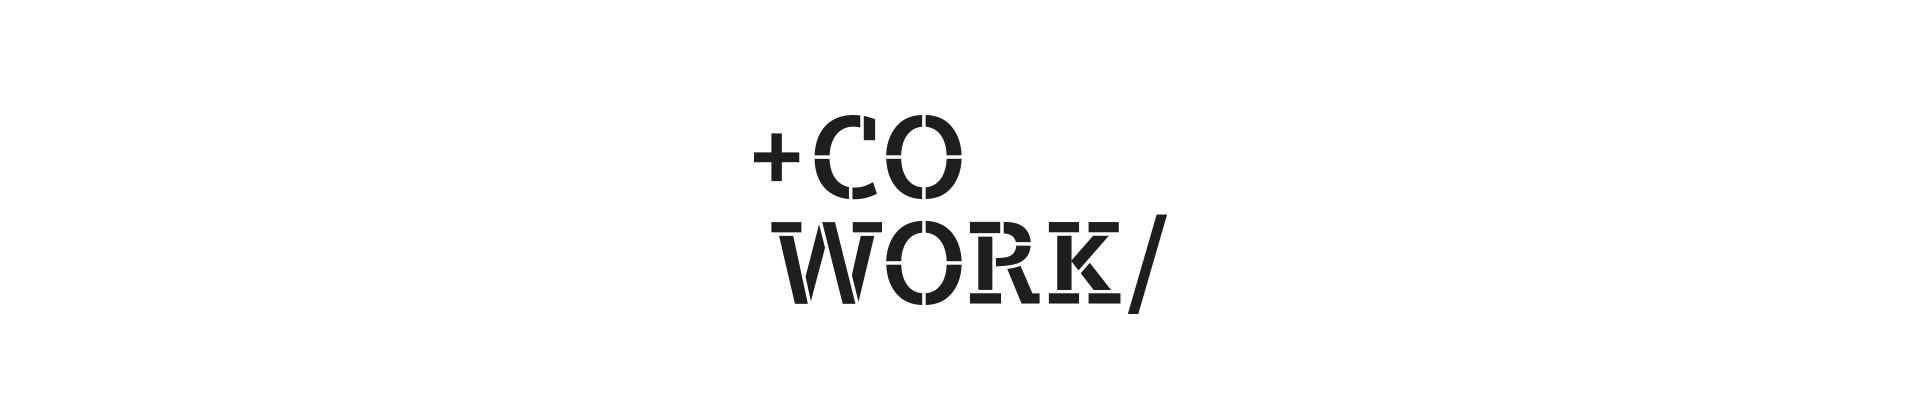 Logo +Cowork/ für Coworking Space Siemens schwarze Schrift auf weißem Hintergrund